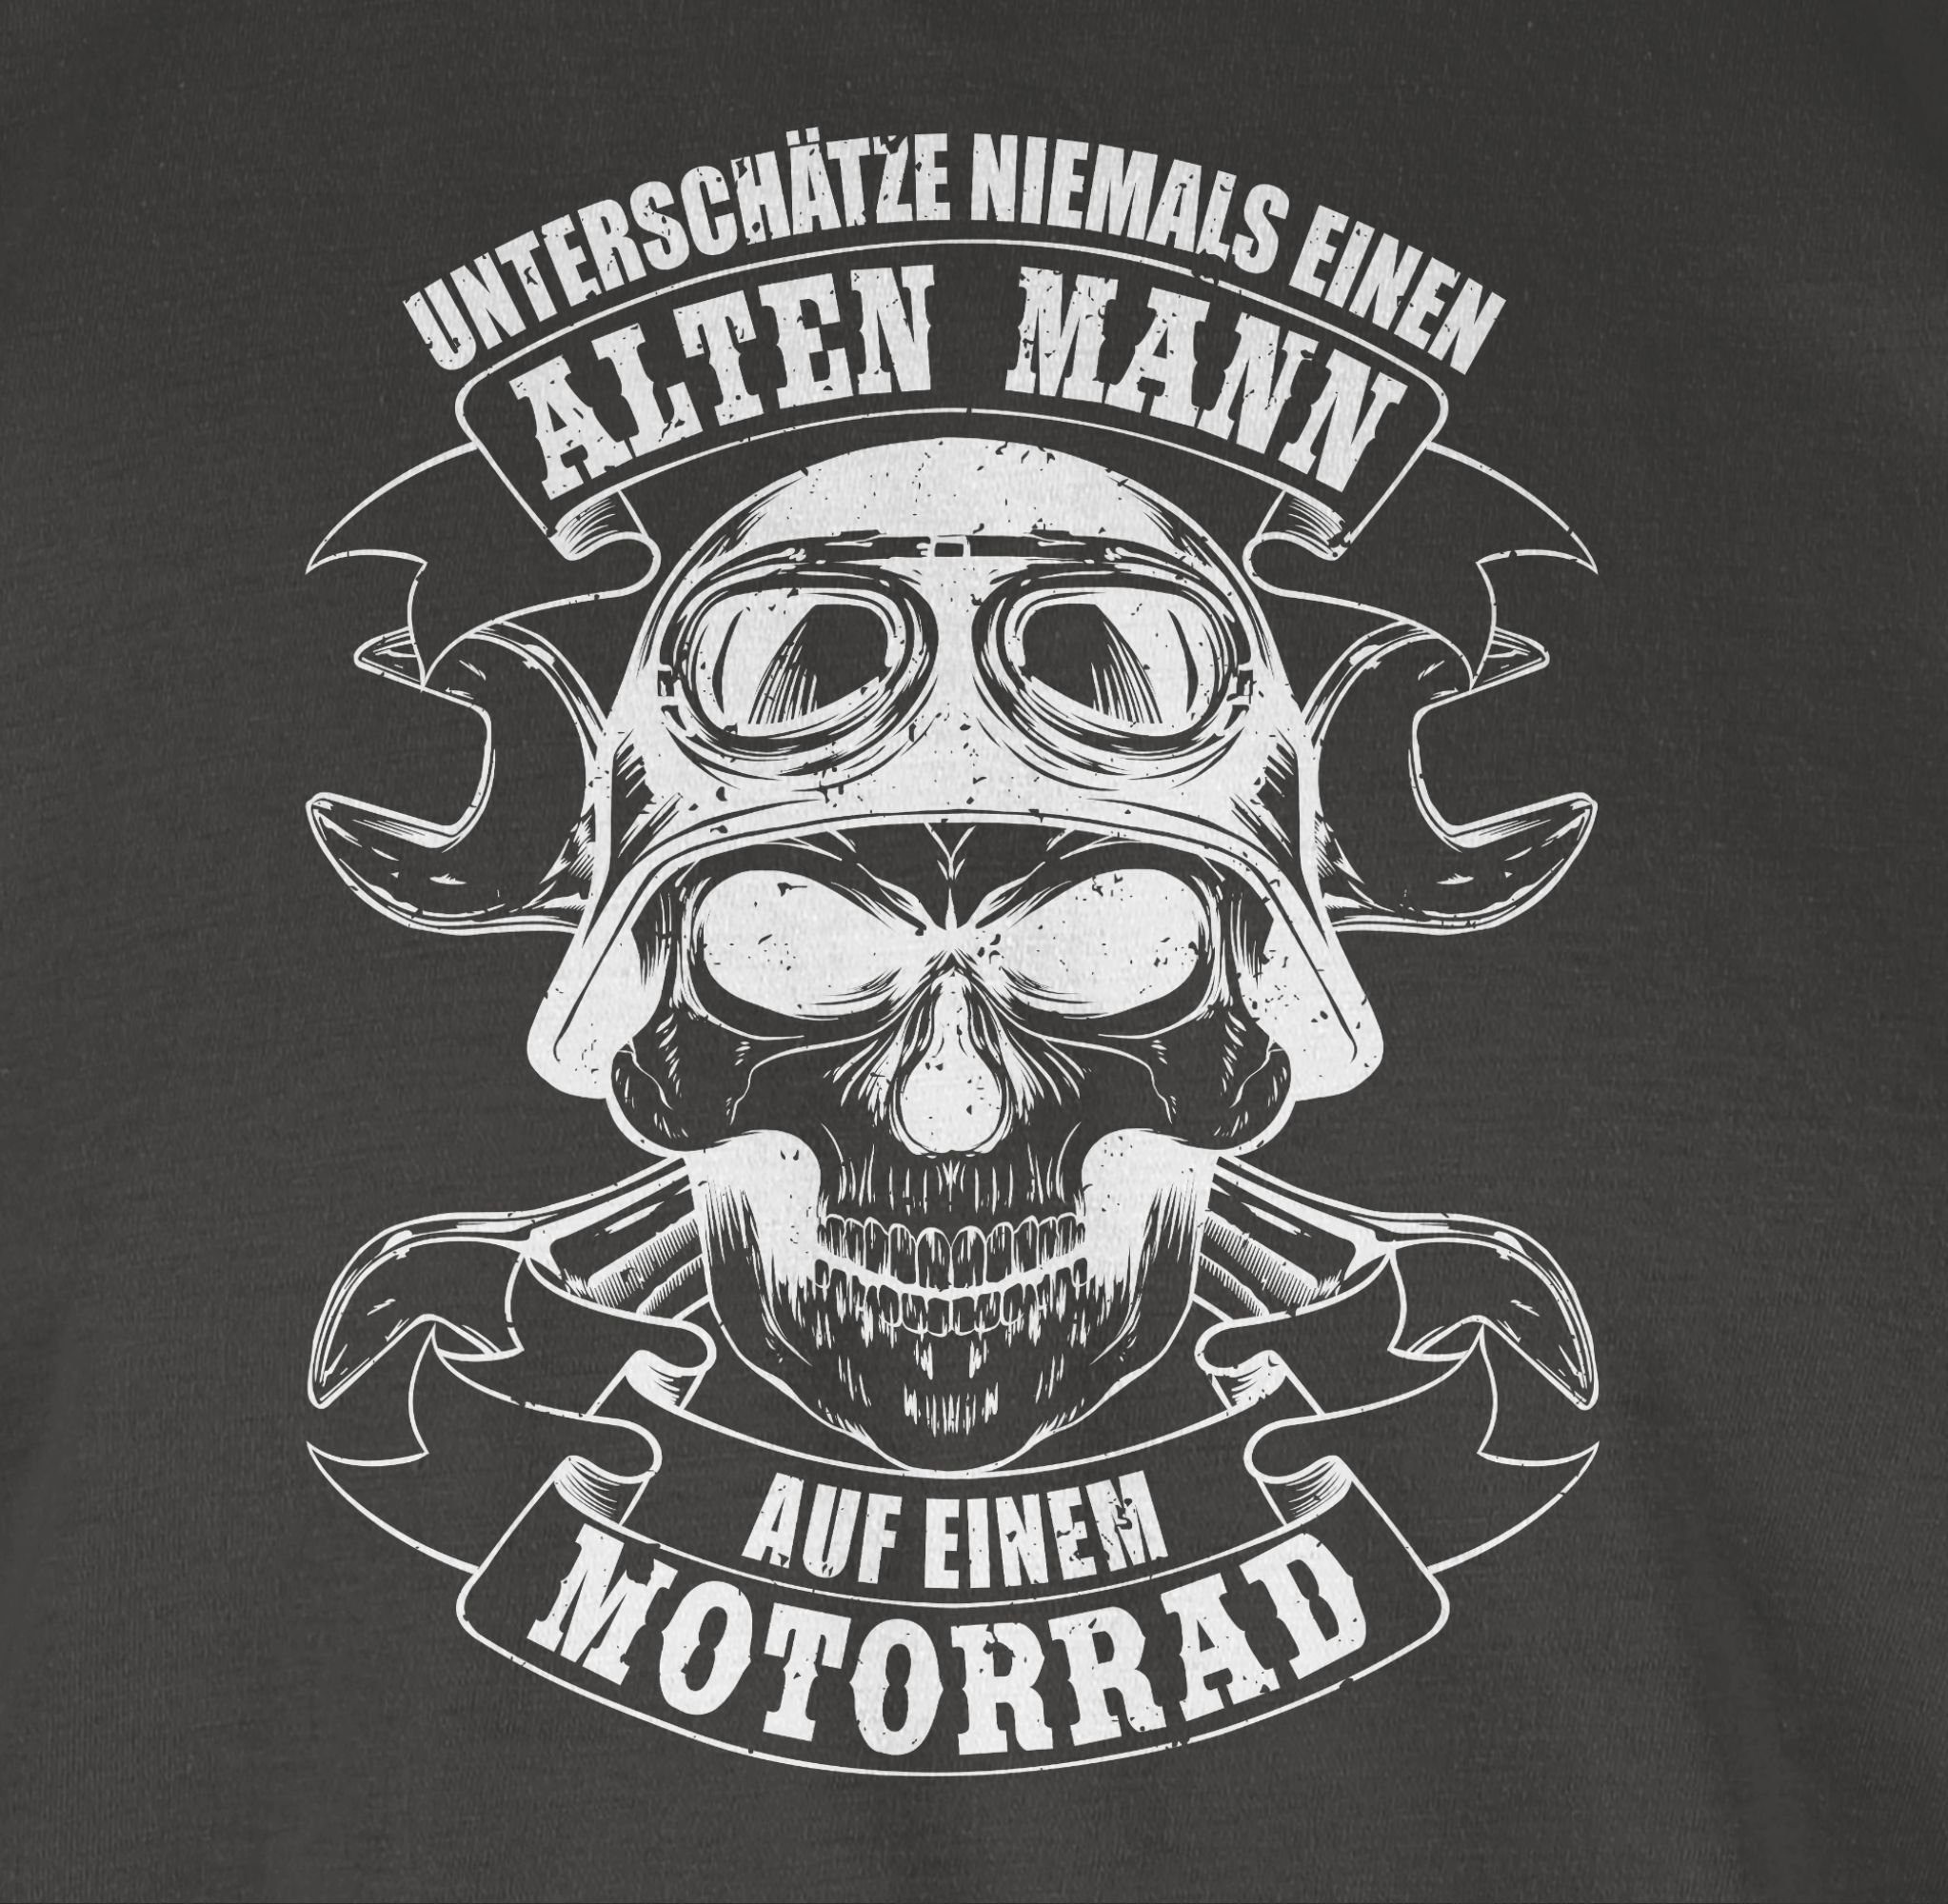 Motorrad weiß Biker einen niemals Unterschätze alten 2 Shirtracer T-Shirt - Dunkelgrau Mann